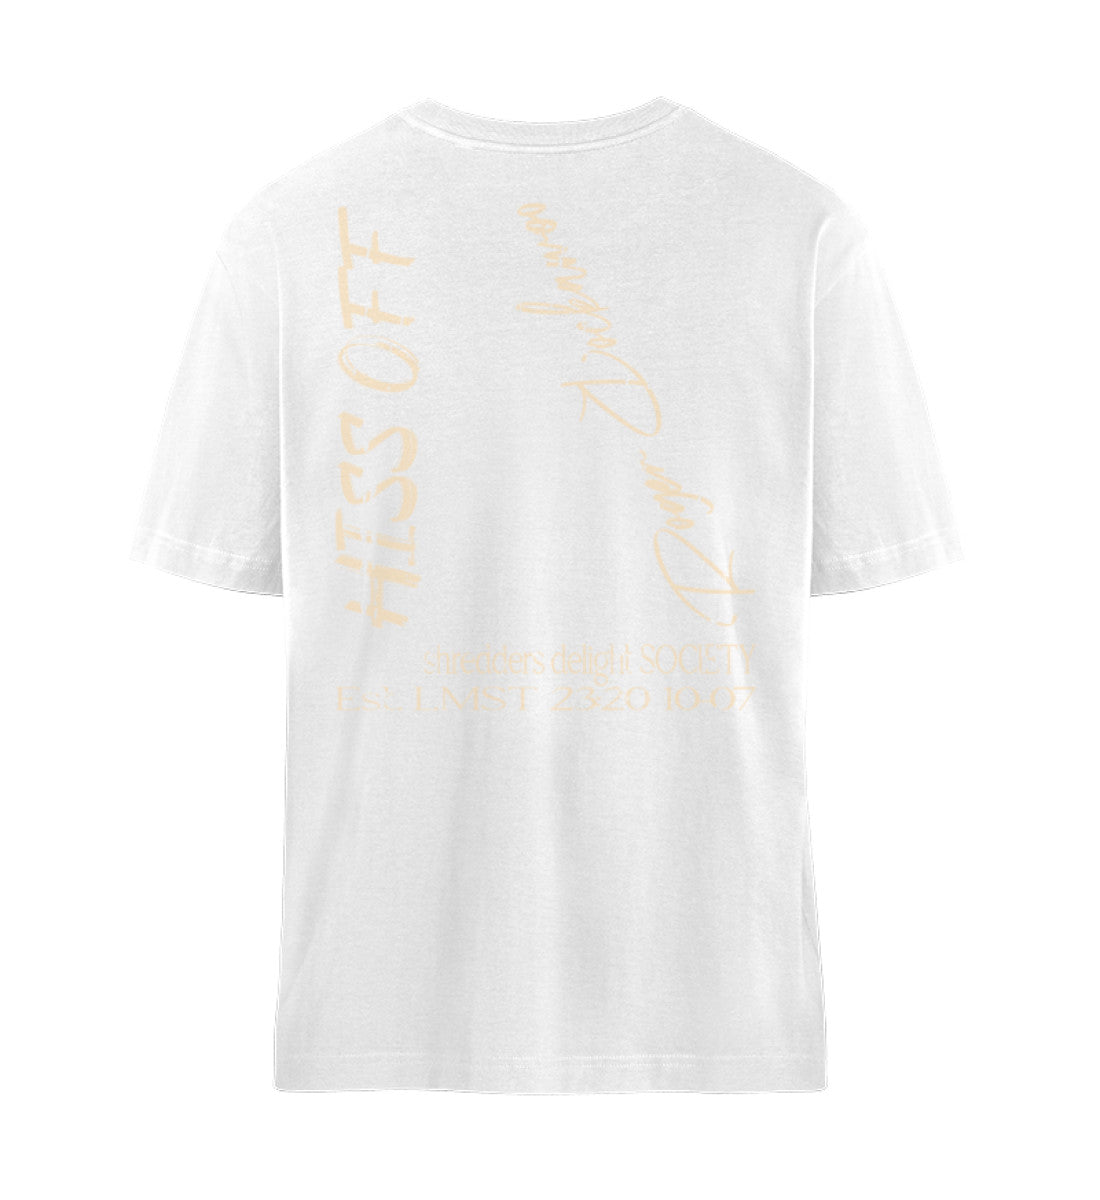 Weißes T-Shirt Unisex Relaxed Fit für Frauen und Männer bedruckt mit dem Design der Roger Rockawoo Kollektion Skateboard Hiss Off